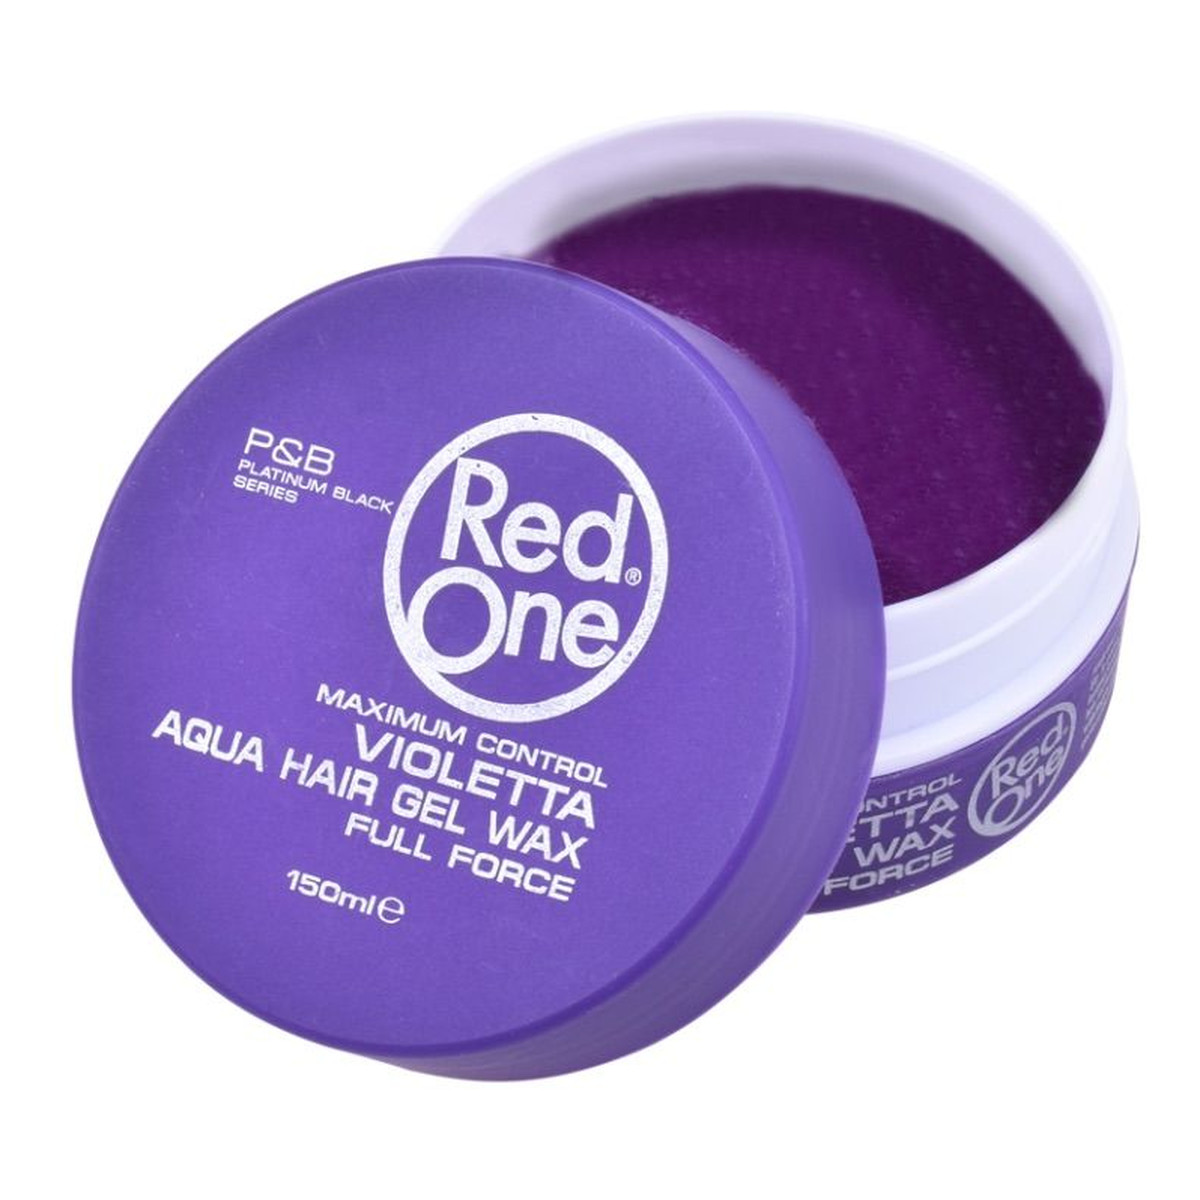 Red One Aqua hair gel wax full force wosk do włosów violetta 150ml